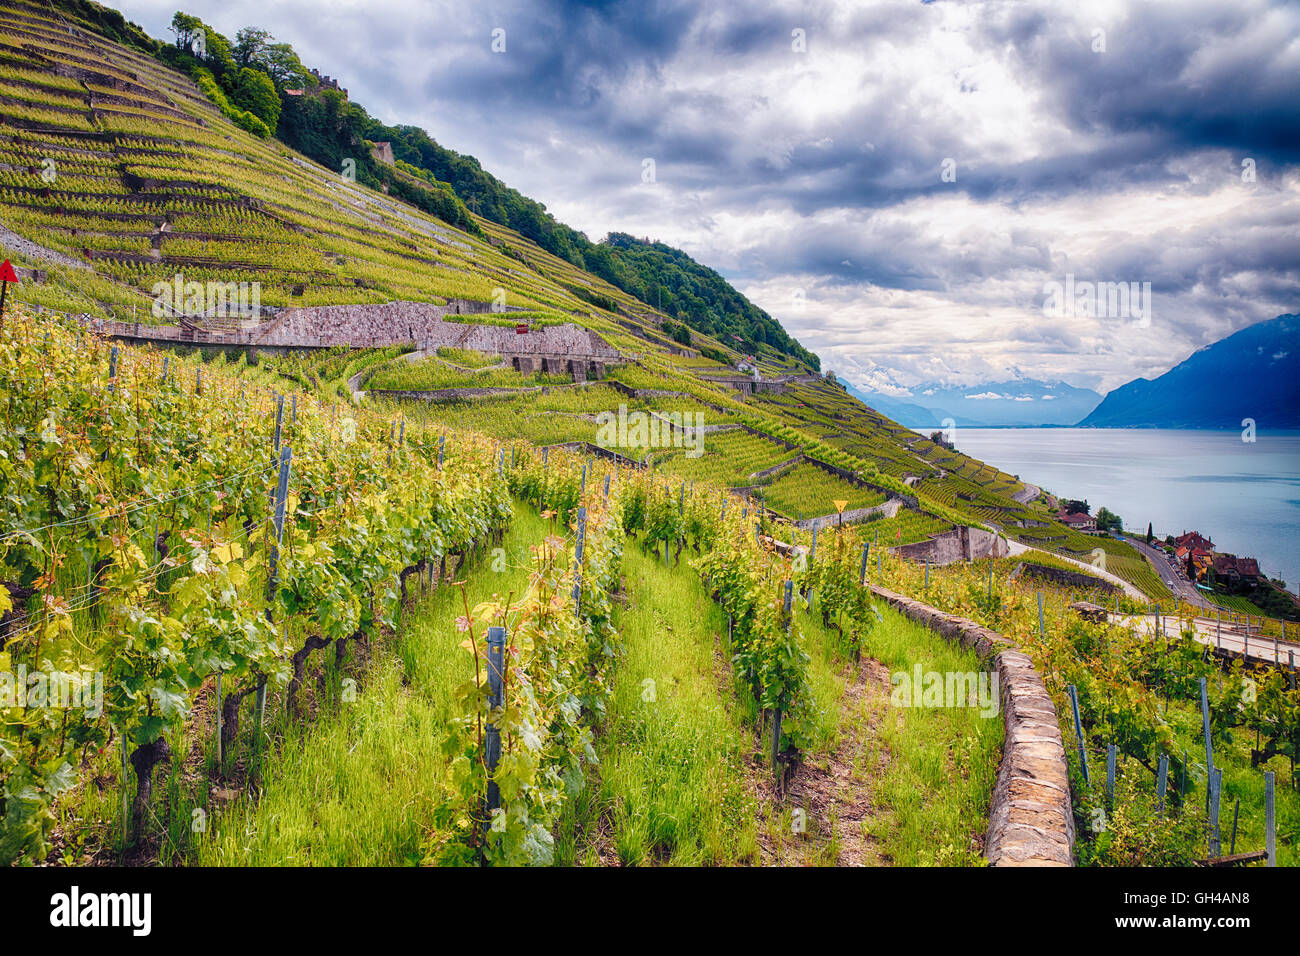 Fila de vides en la ladera de las montañas, viñedos de Lavaux Terrraces, Lago Ginebra, cantón de Vaud, Suiza Foto de stock